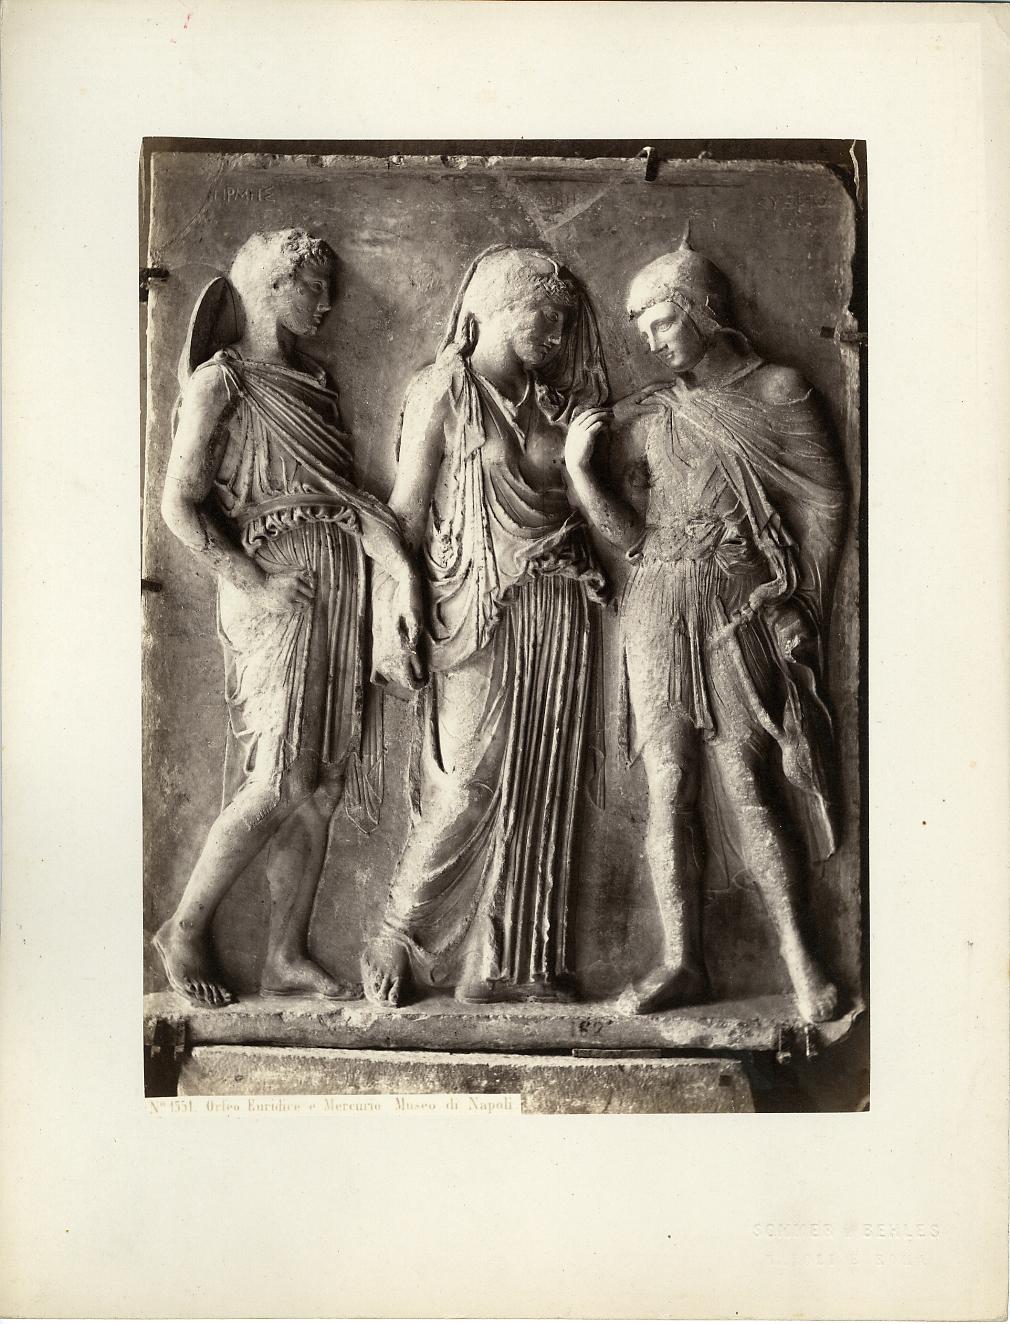 Scultura romana - Rilievo di Orfeo (positivo) di Alkamenes, Sommer & Behles (studio) - replica augustea di originale di Alkamenes (XIX)